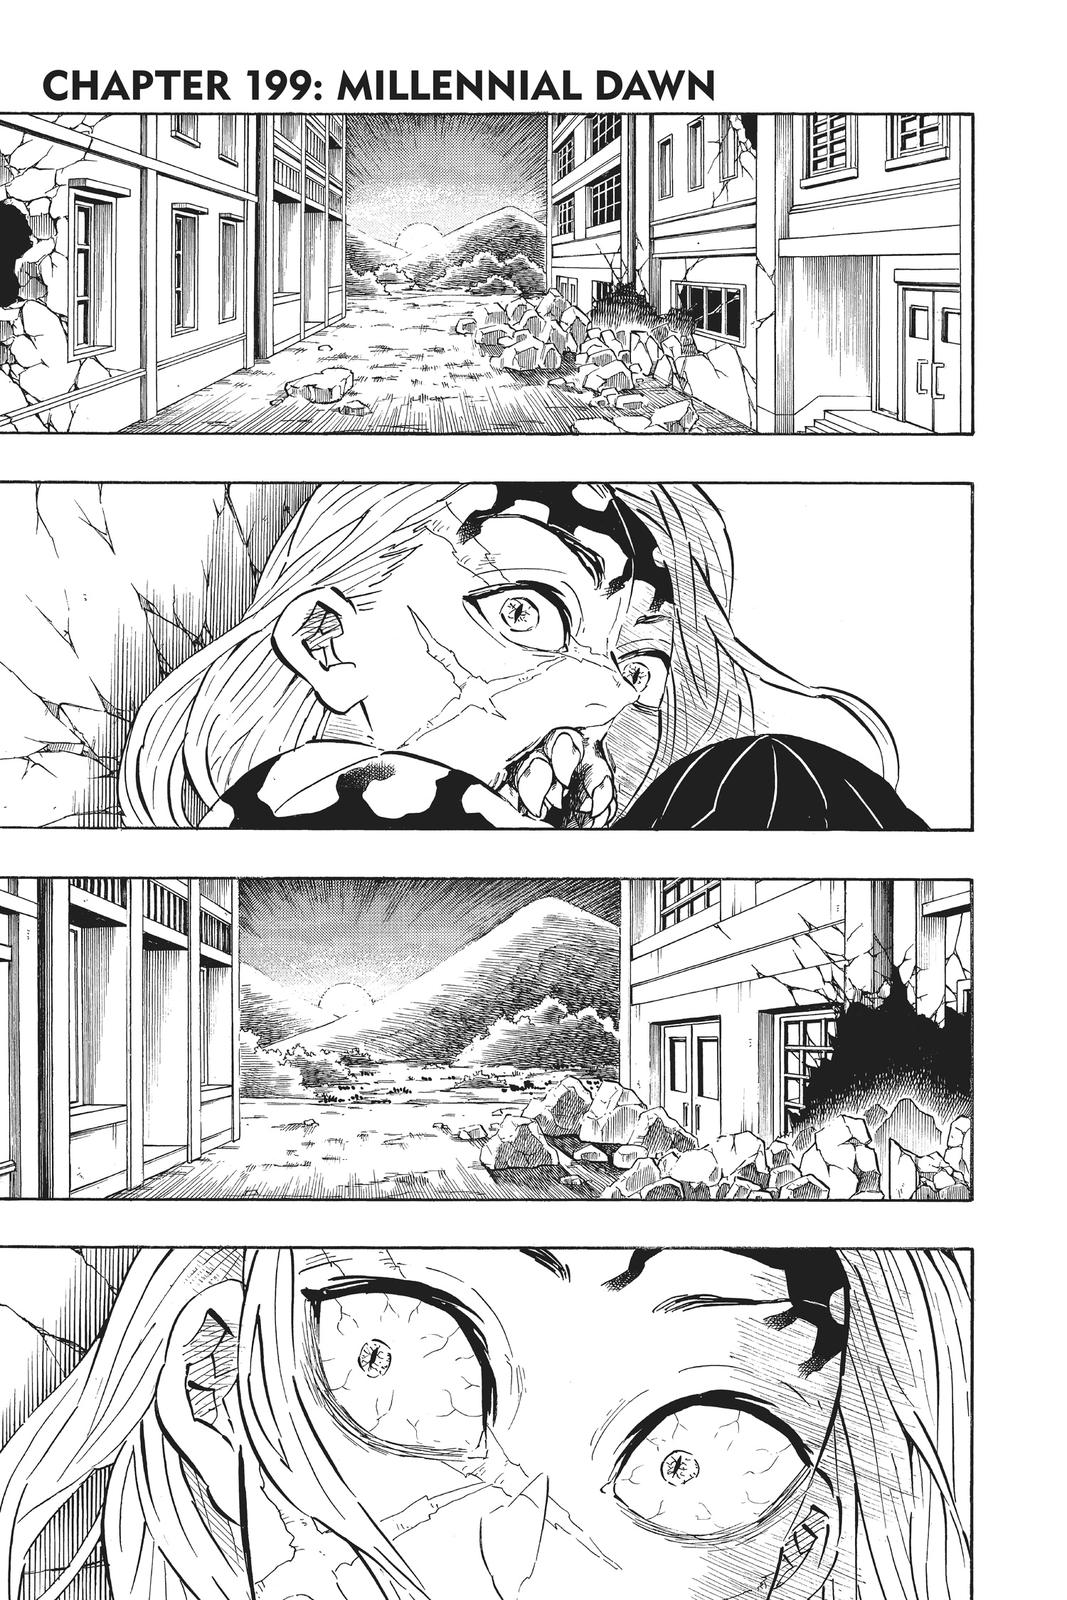 Demon Slayer - Kimetsu no Yaiba, Chapter 45 - Demon Slayer - Kimetsu no  Yaiba Manga Online